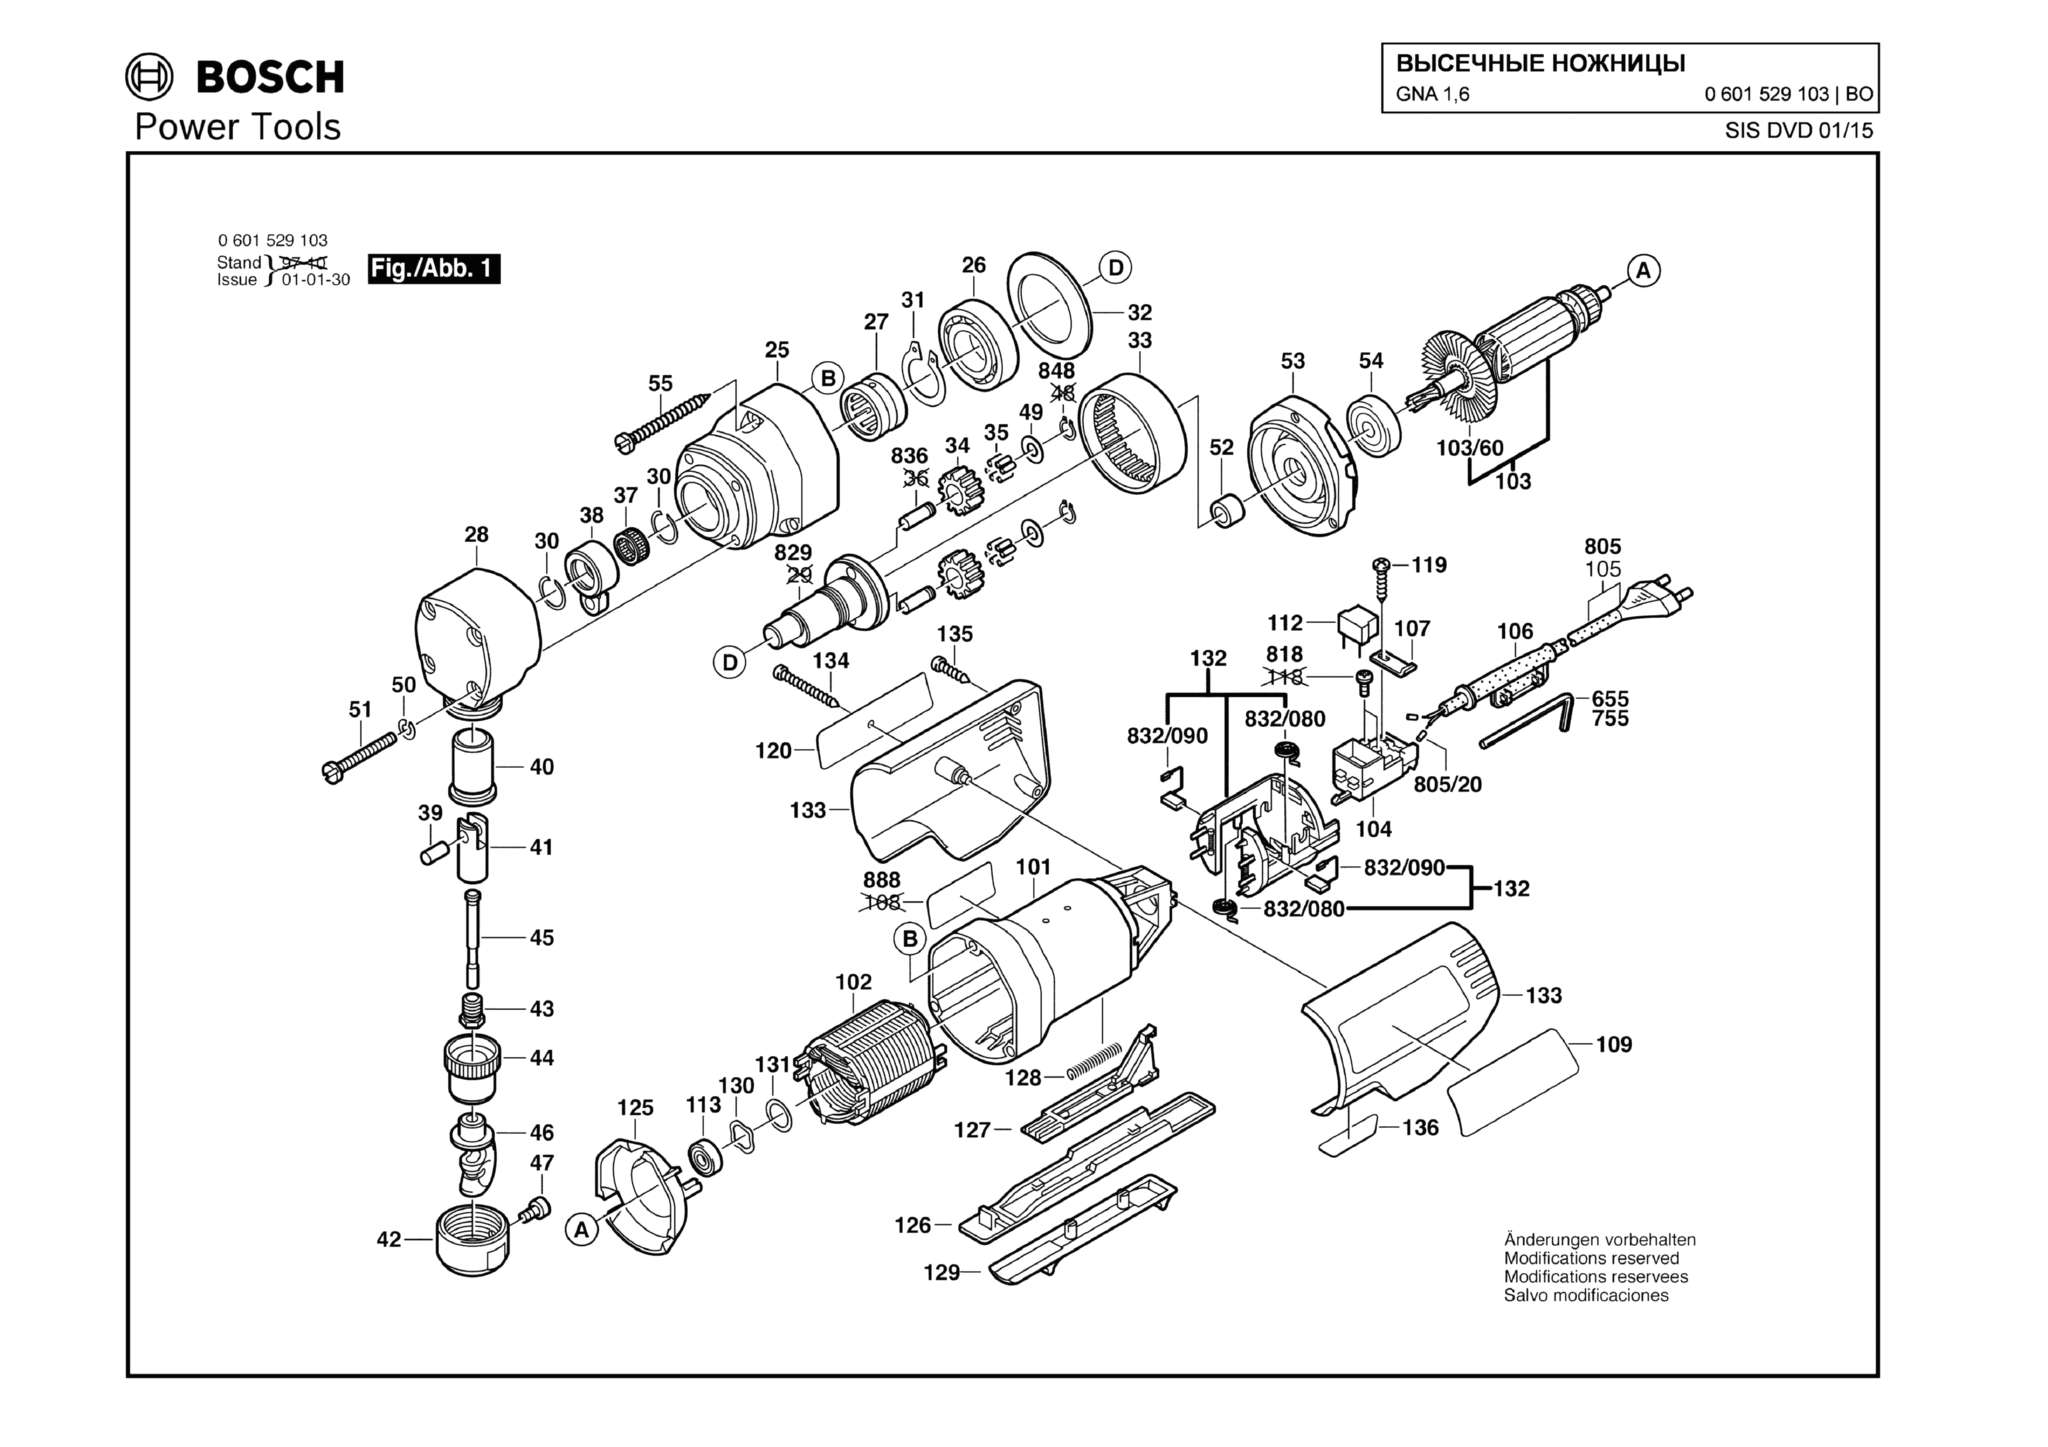 Запчасти, схема и деталировка Bosch GNA 1,6 (ТИП 0601529103)